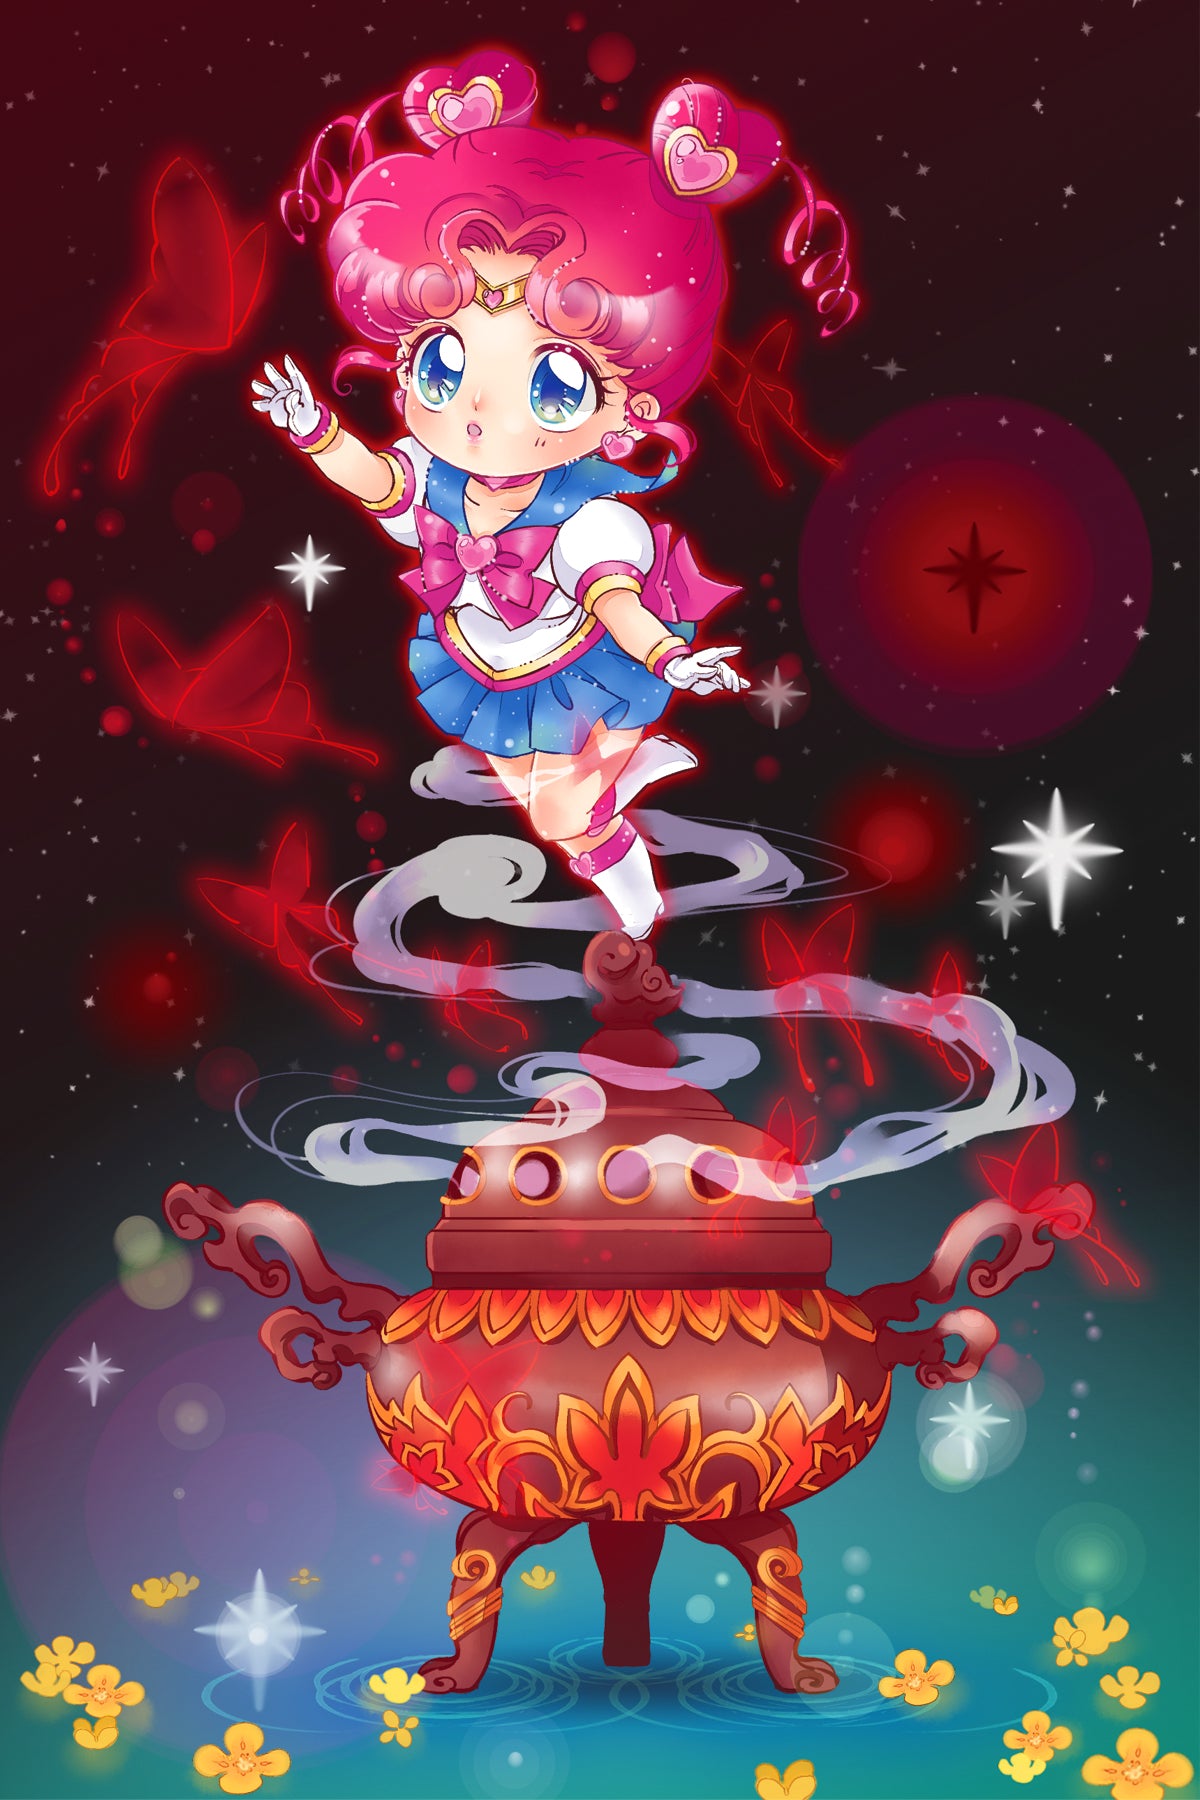 Sailor Chibichibi (GK version)